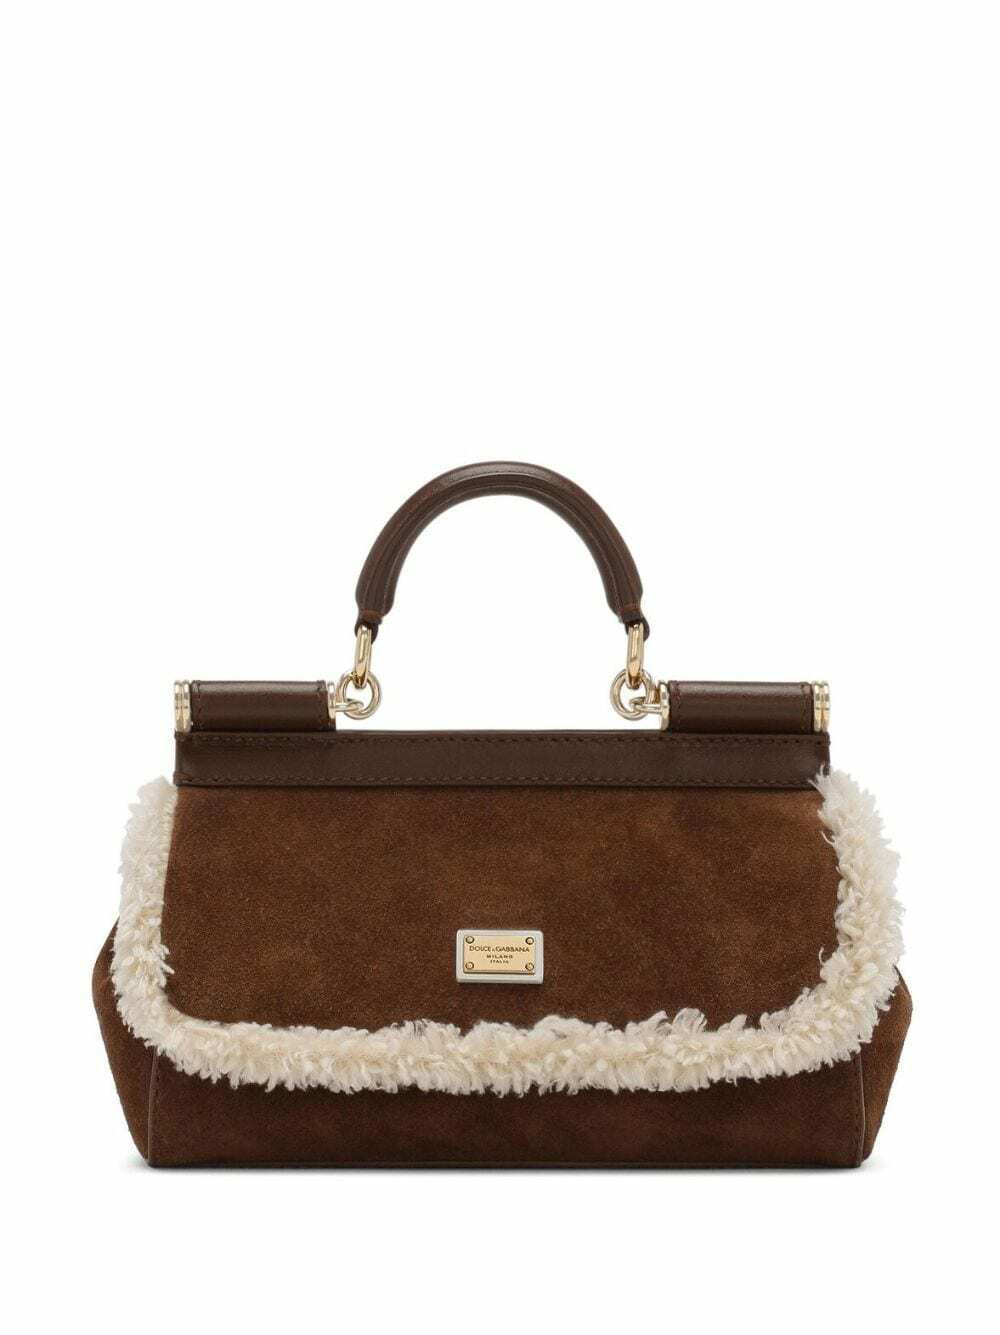 Dolce & Gabbana Medium Sicily Handbag in Natural